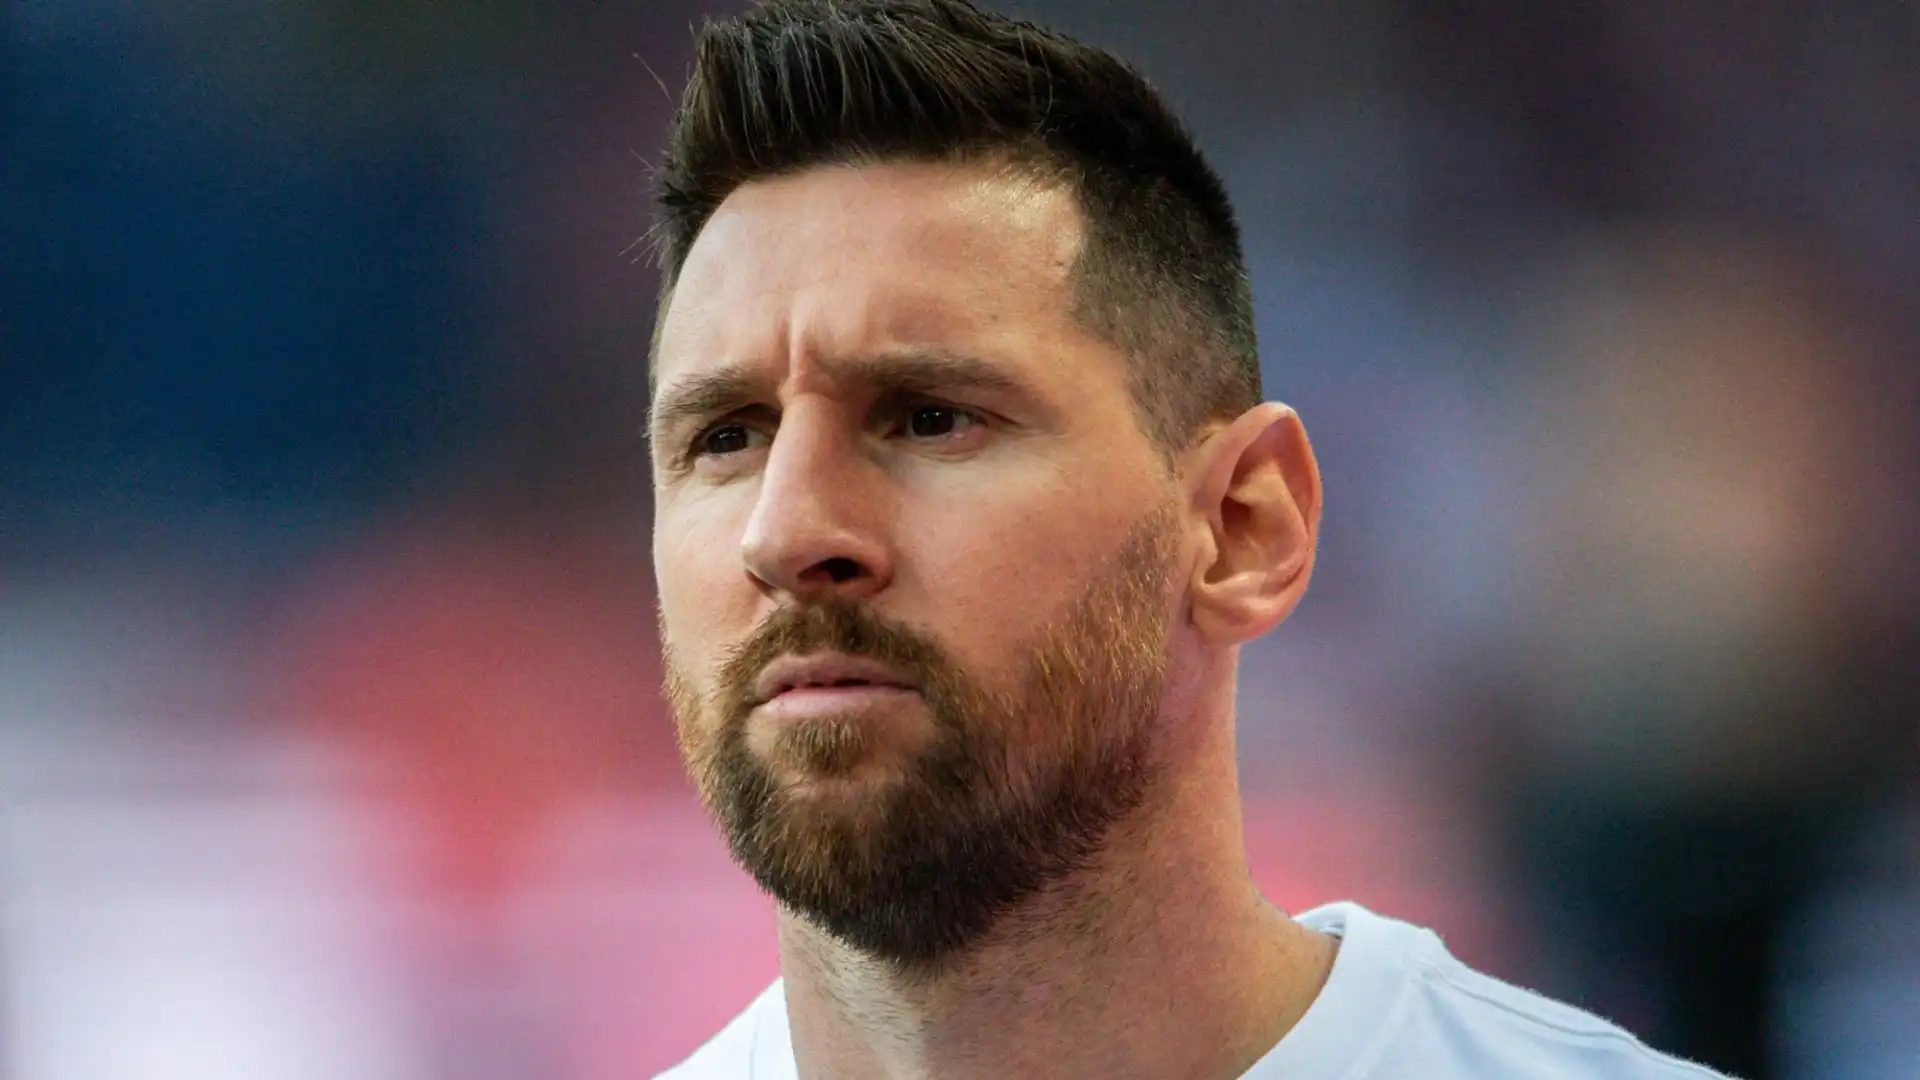 "Se Messi parteciperà alle Olimpiadi a Parigi dovrà essere fischiato": è spietata l'accusa dalla Francia